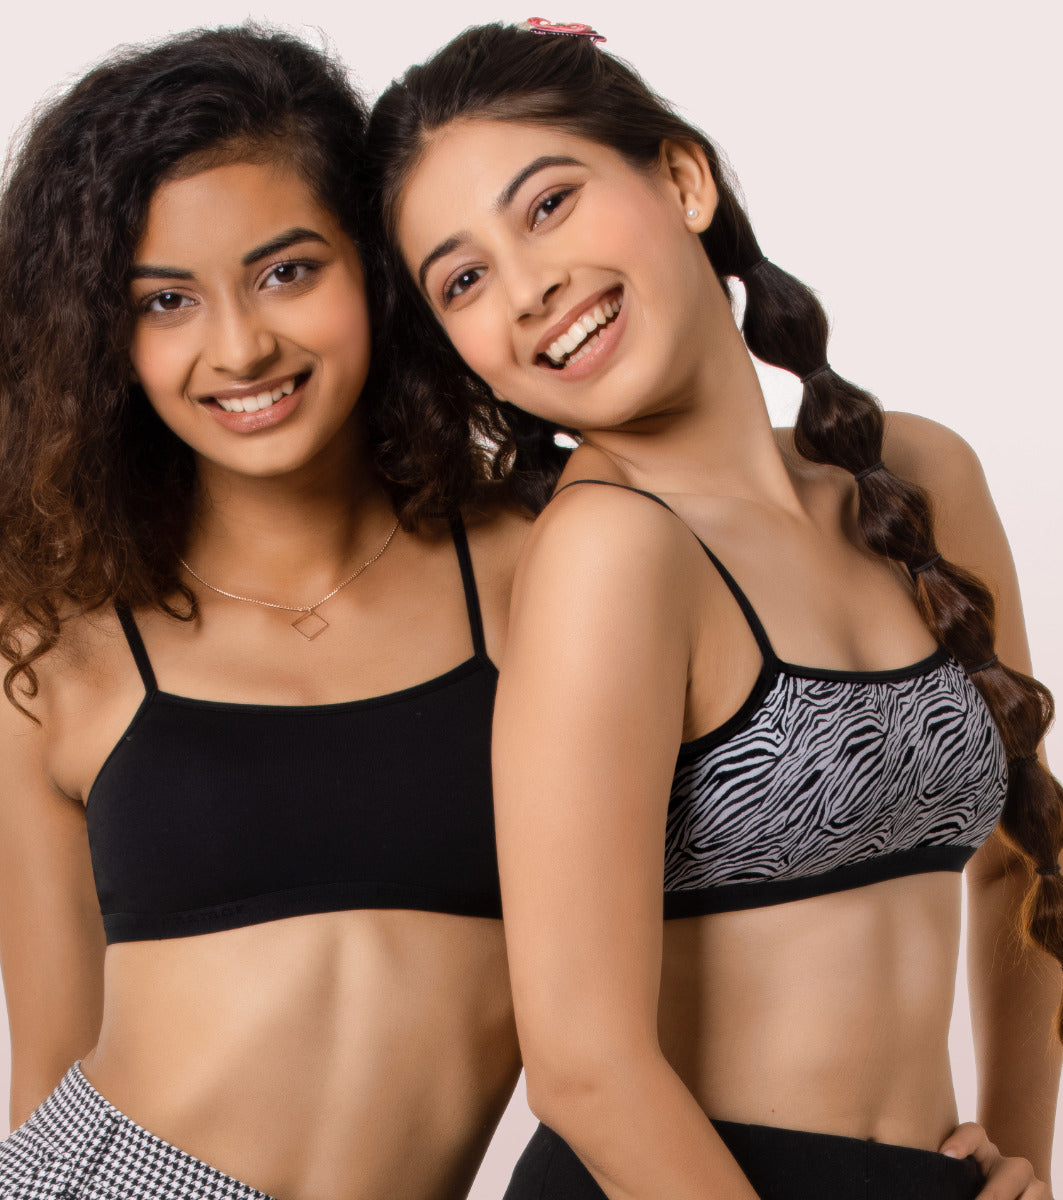 SOLTOX beginner bra pack of 6 Girls Training/Beginners Non Padded